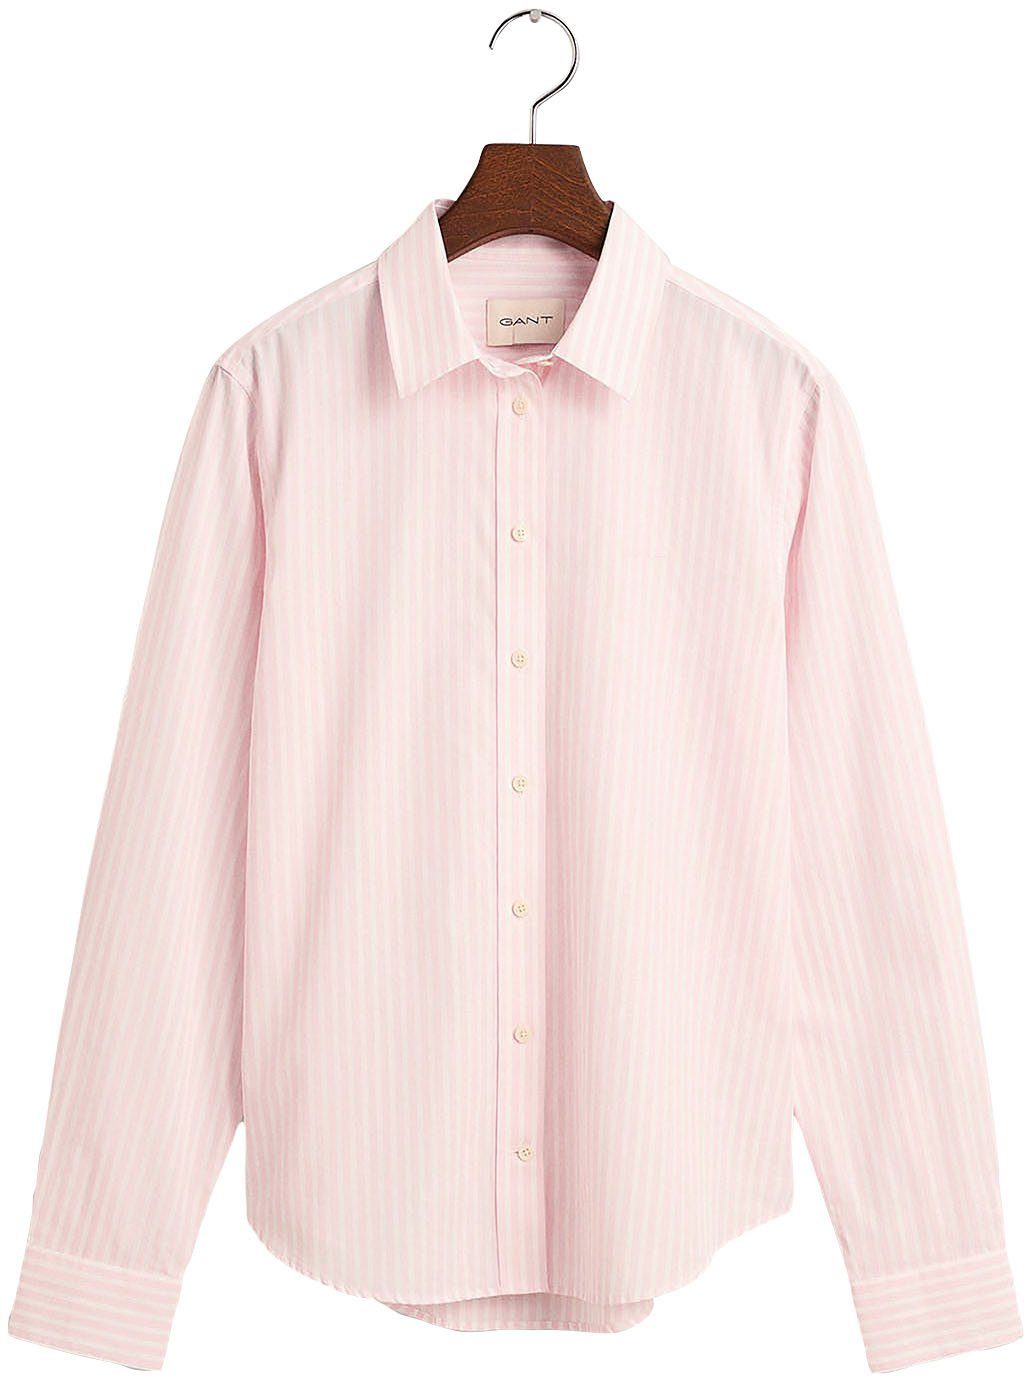 Gant Hemdbluse REG POPLIN STRIPED SHIRT mit einer kleinen Logostickerei auf der Brust Light pink | Blusen